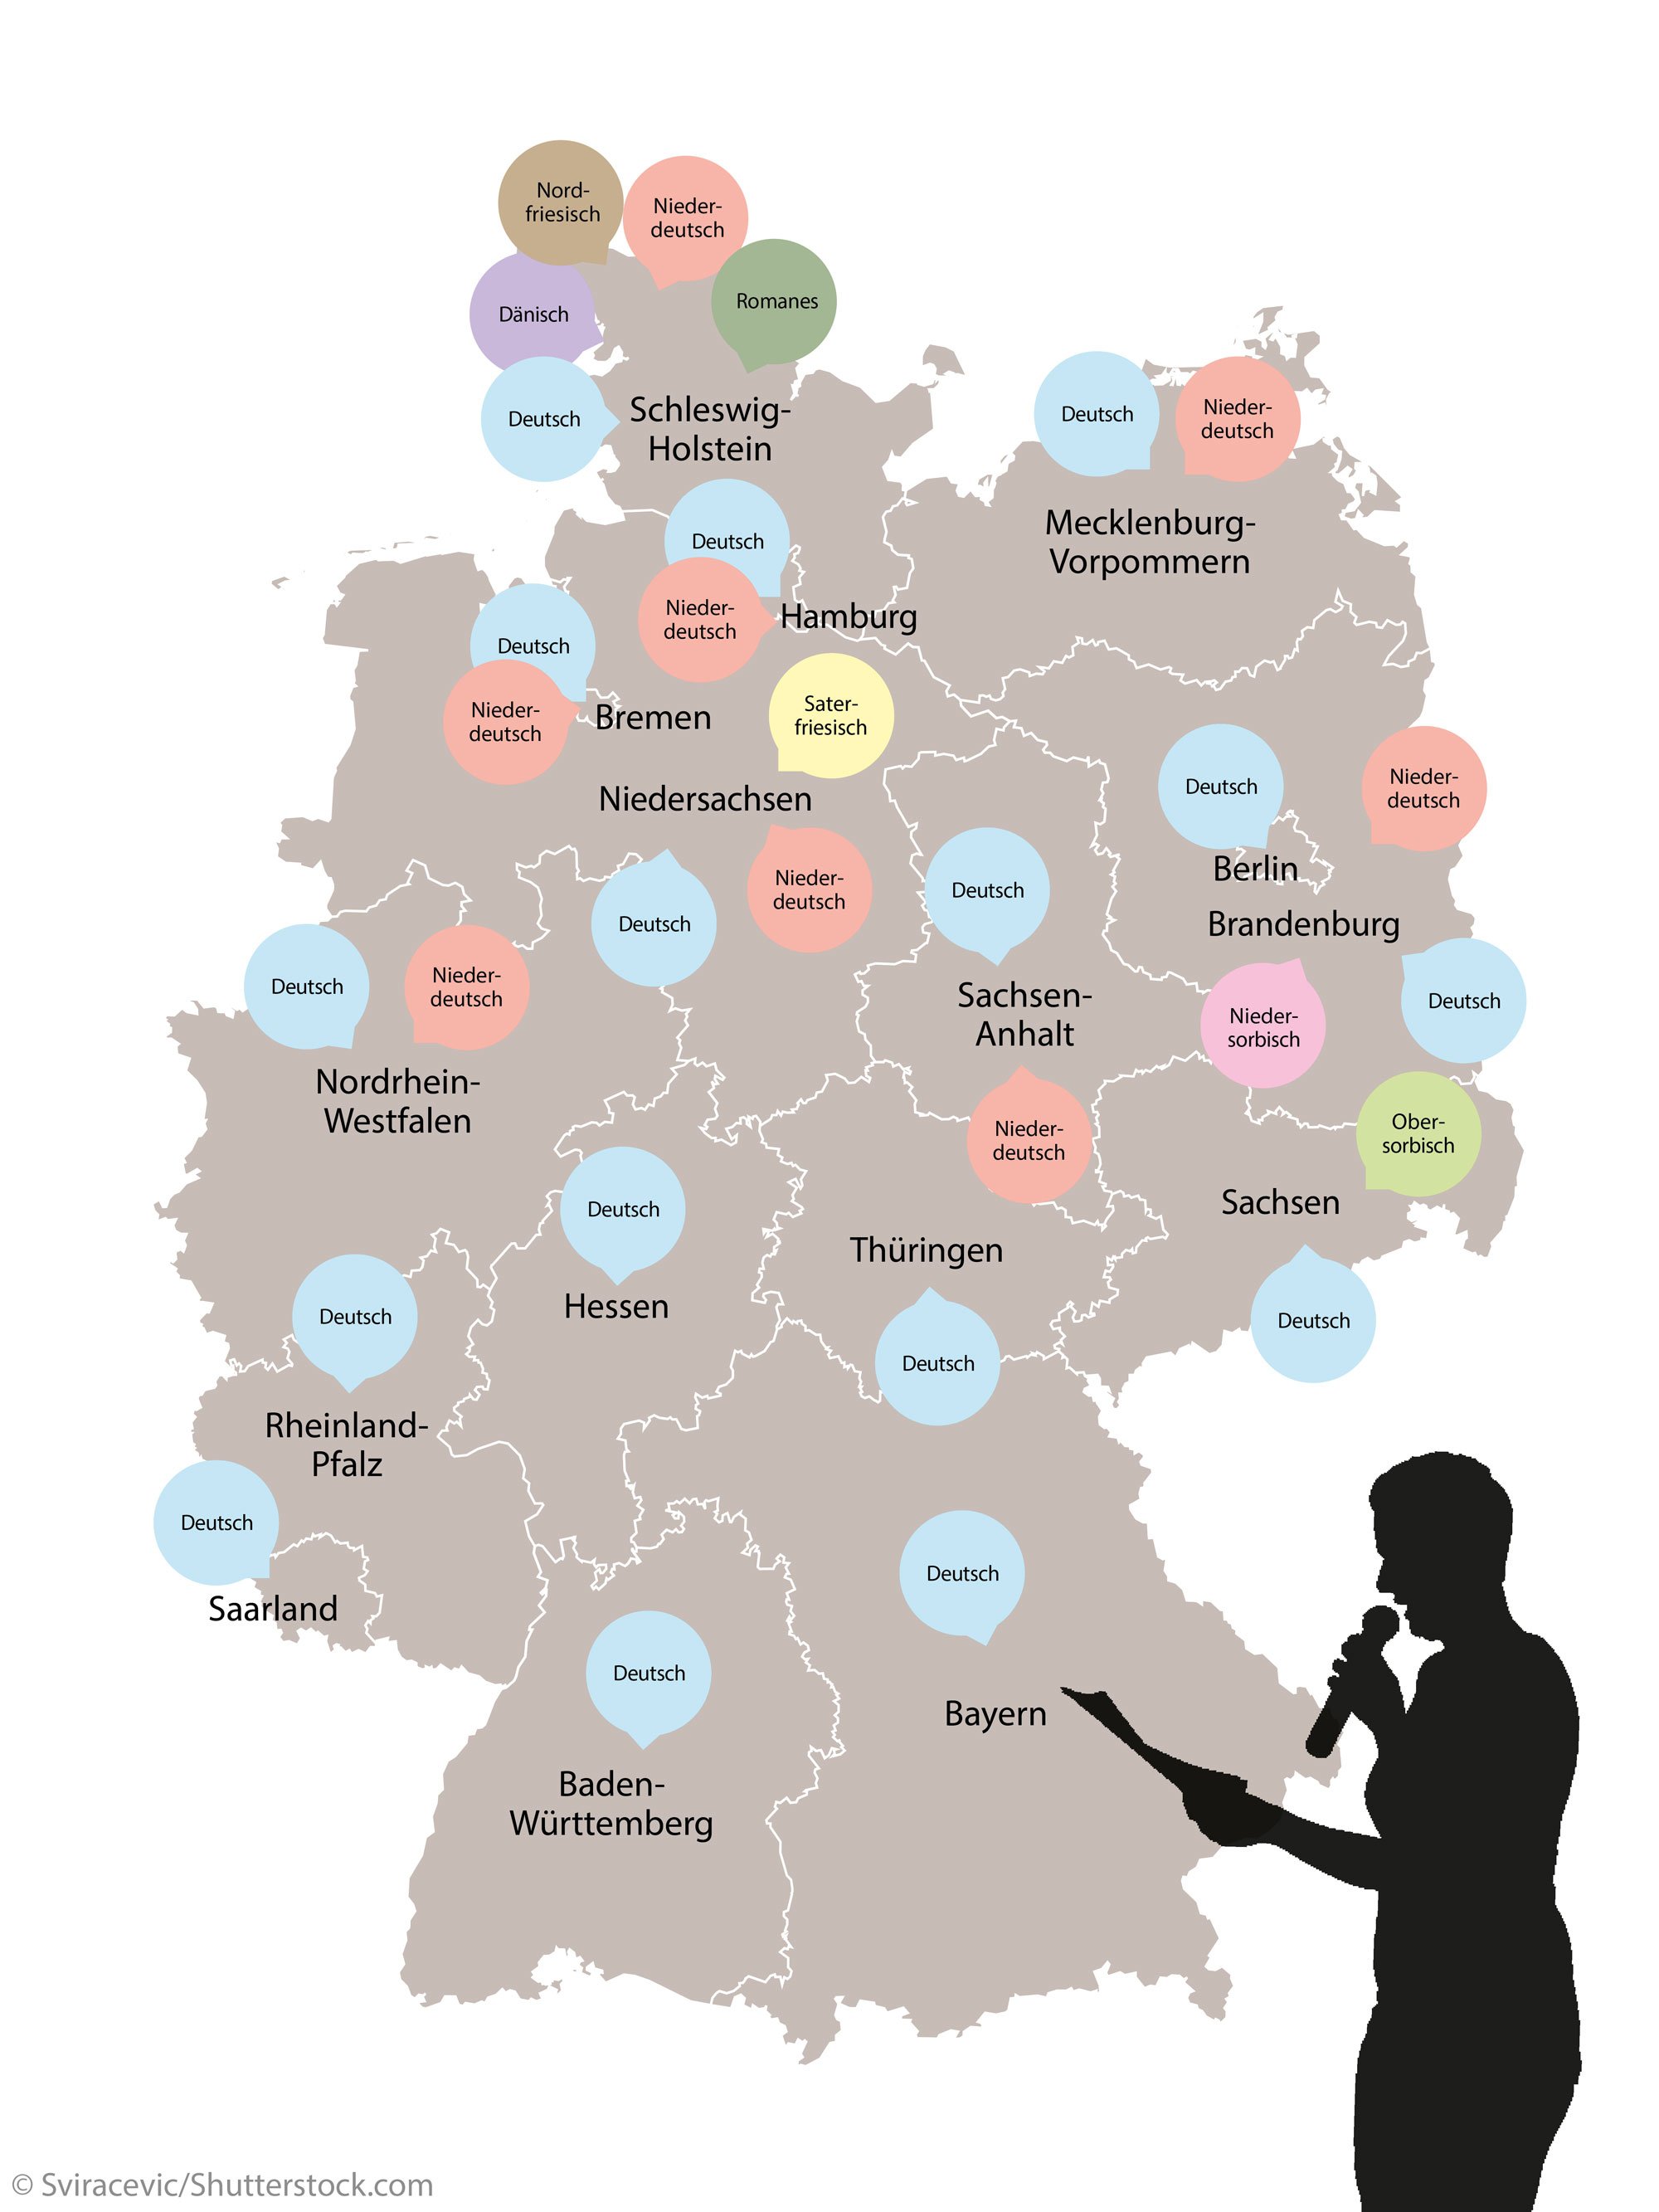 Karte mit Übersicht über Sprachen, die in Deutschland gesprochen werden